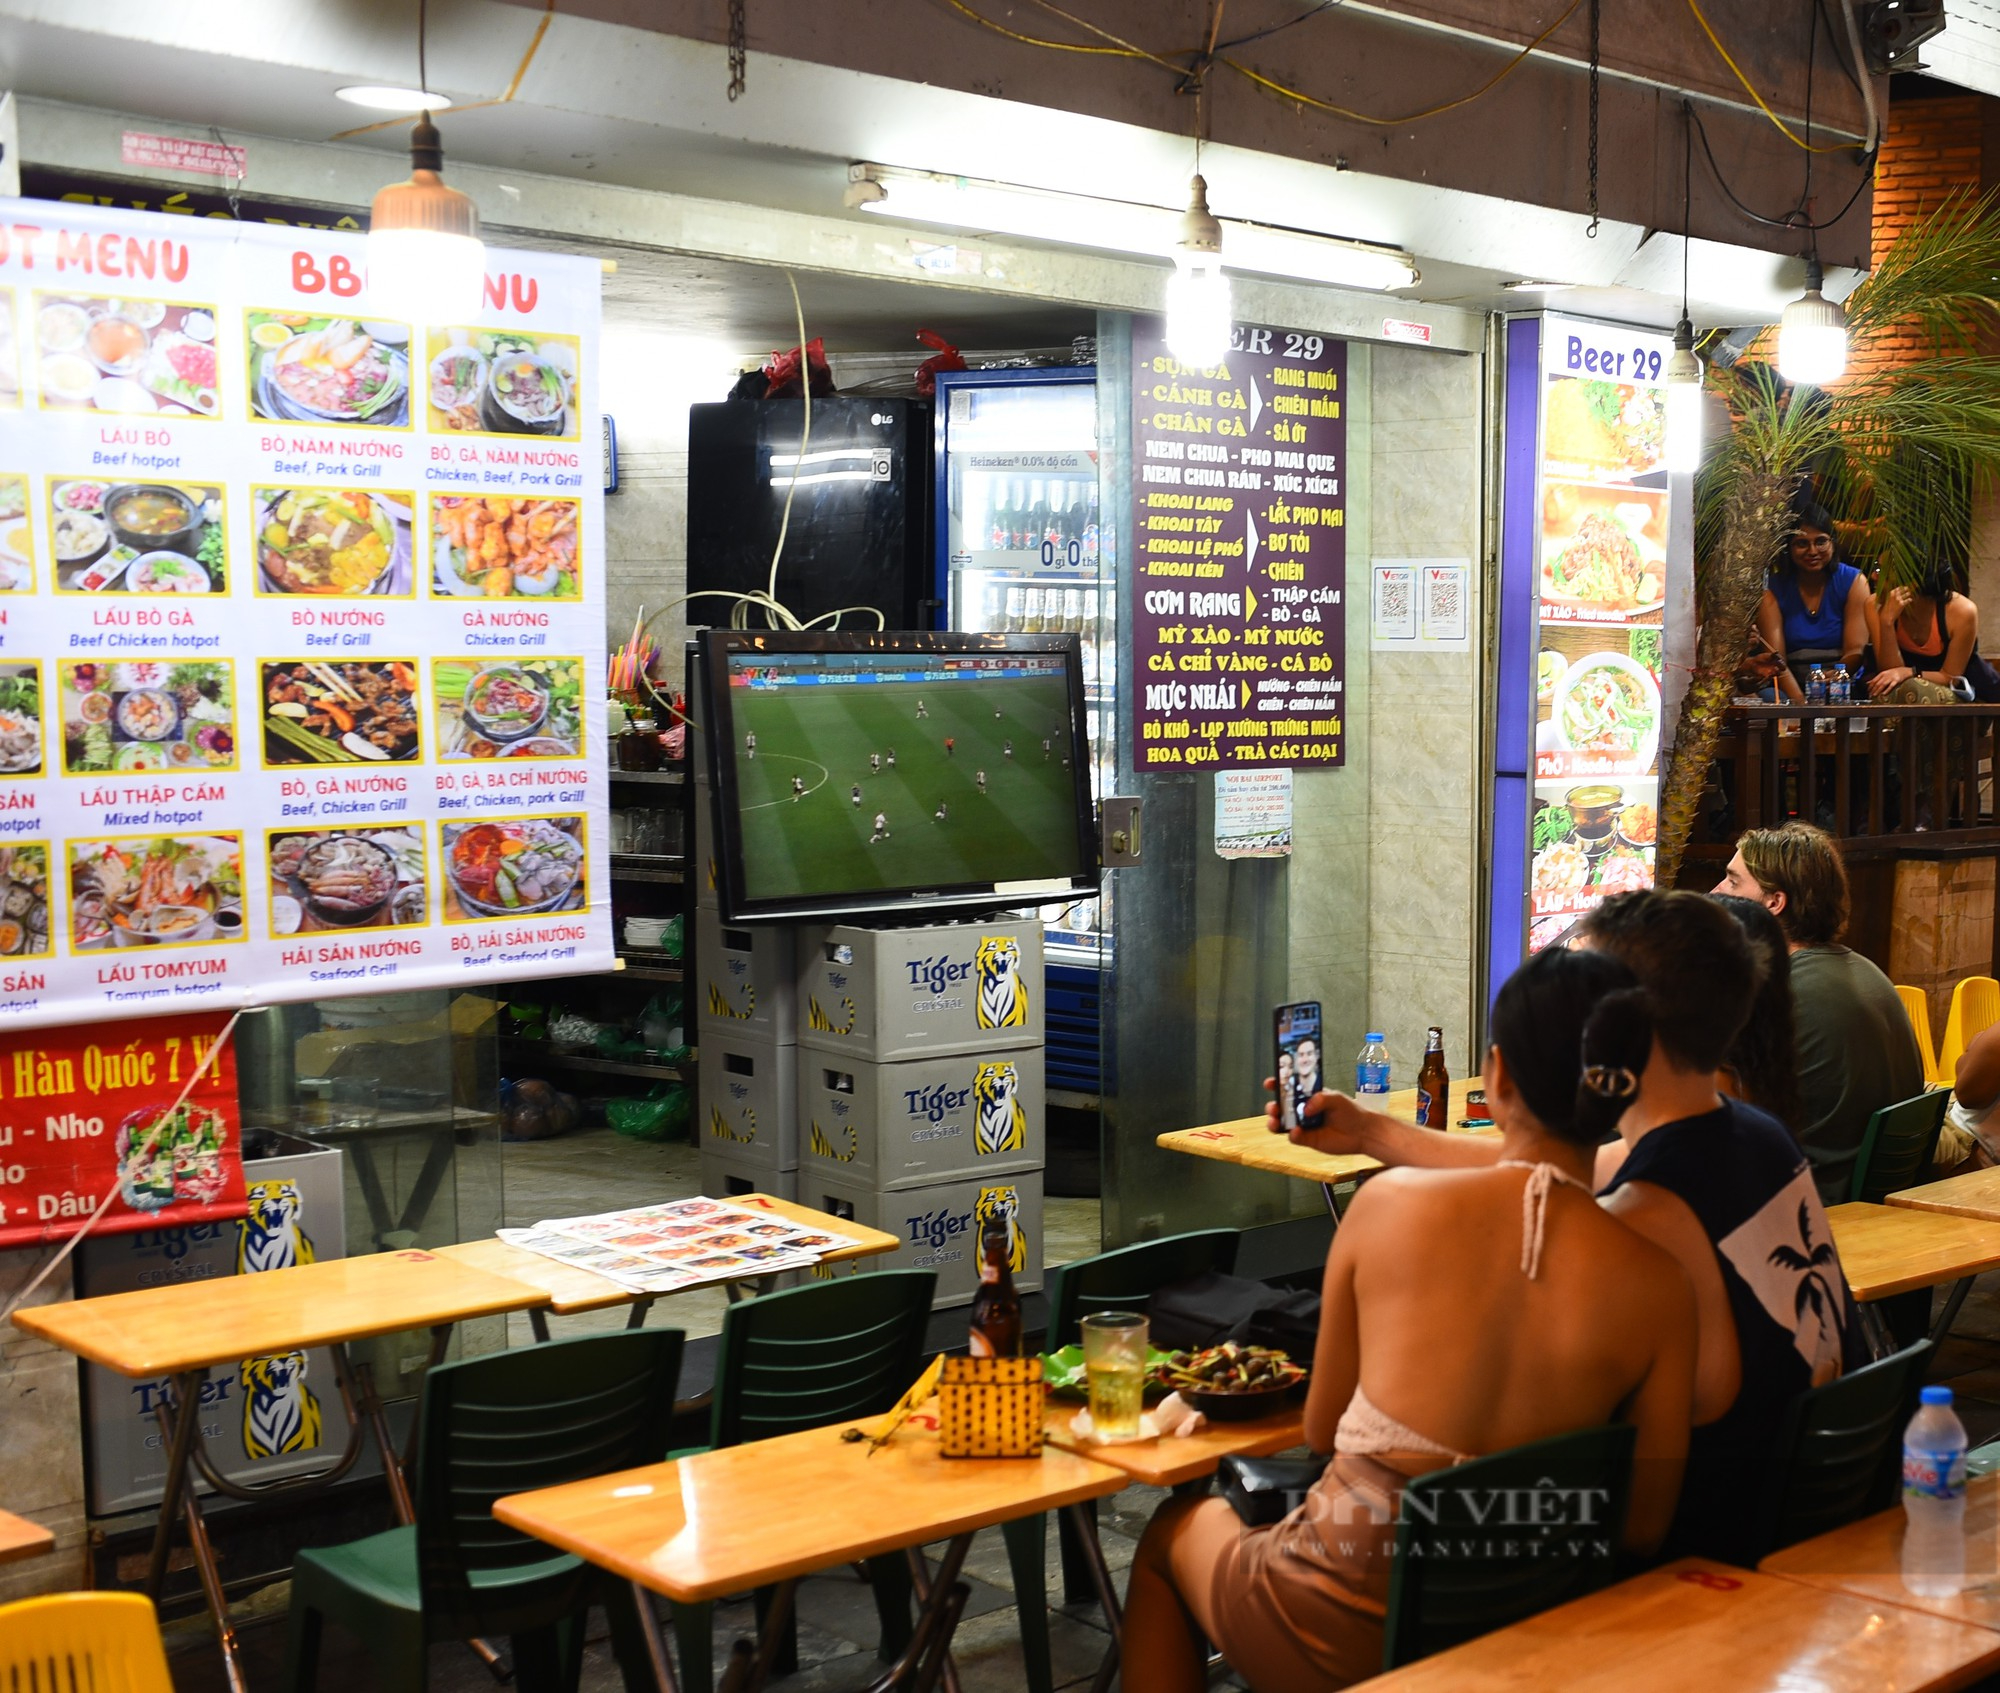 Ảnh: Du khách nước ngoài 'chật kín' phố Tạ Hiện, cuồng nhiệt cổ vũ World Cup 2022 - Ảnh 3.